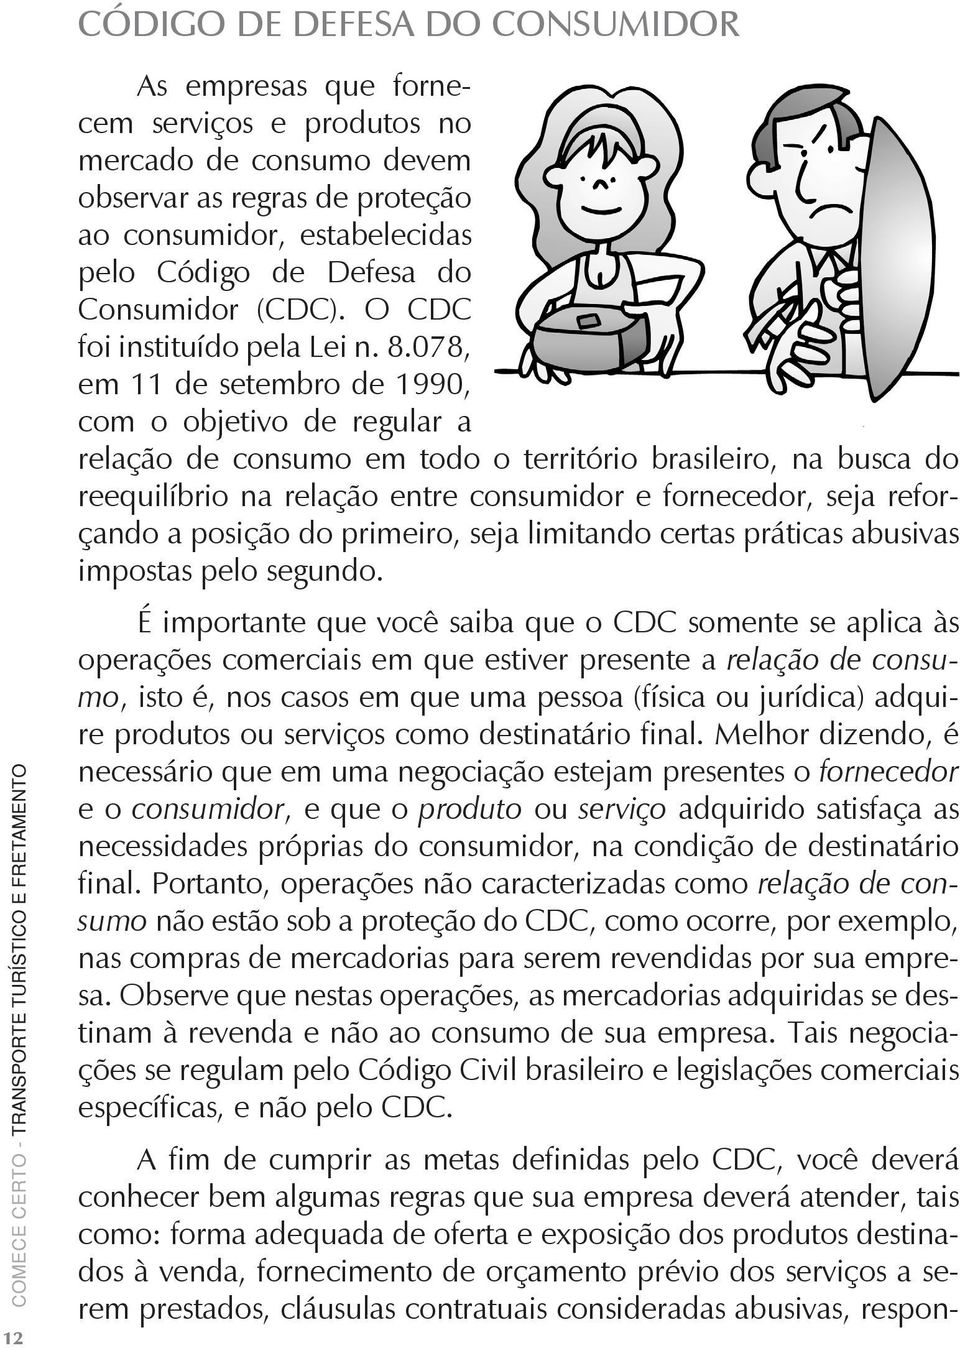 078, em 11 de setembro de 1990, com o objetivo de regular a relação de consumo em todo o território brasileiro, na busca do reequilíbrio na relação entre consumidor e fornecedor, seja reforçando a